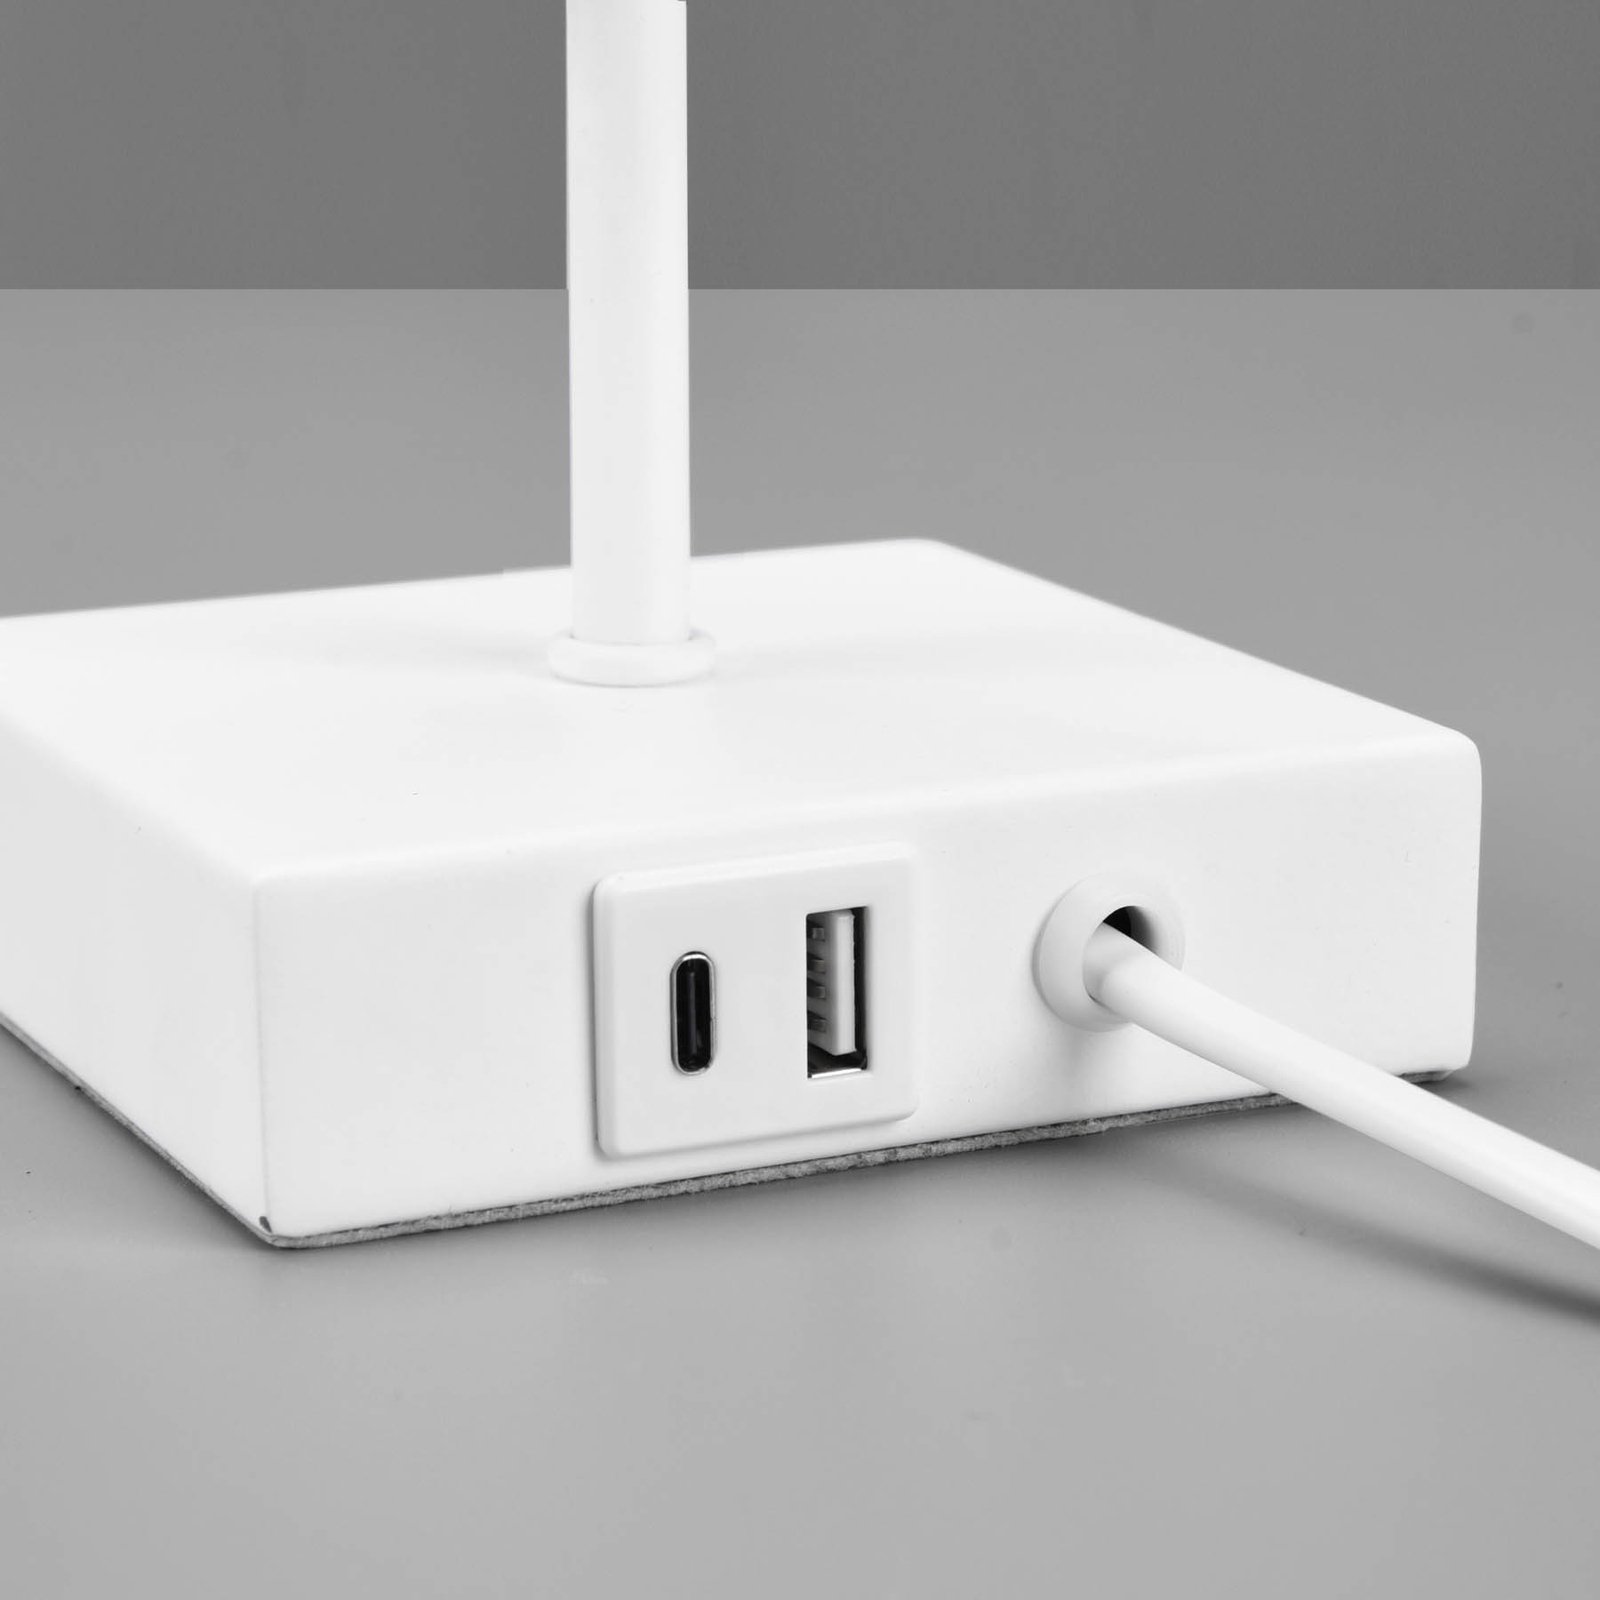 Επιτραπέζιο φωτιστικό Ole με σύνδεση USB, λευκό/λευκό